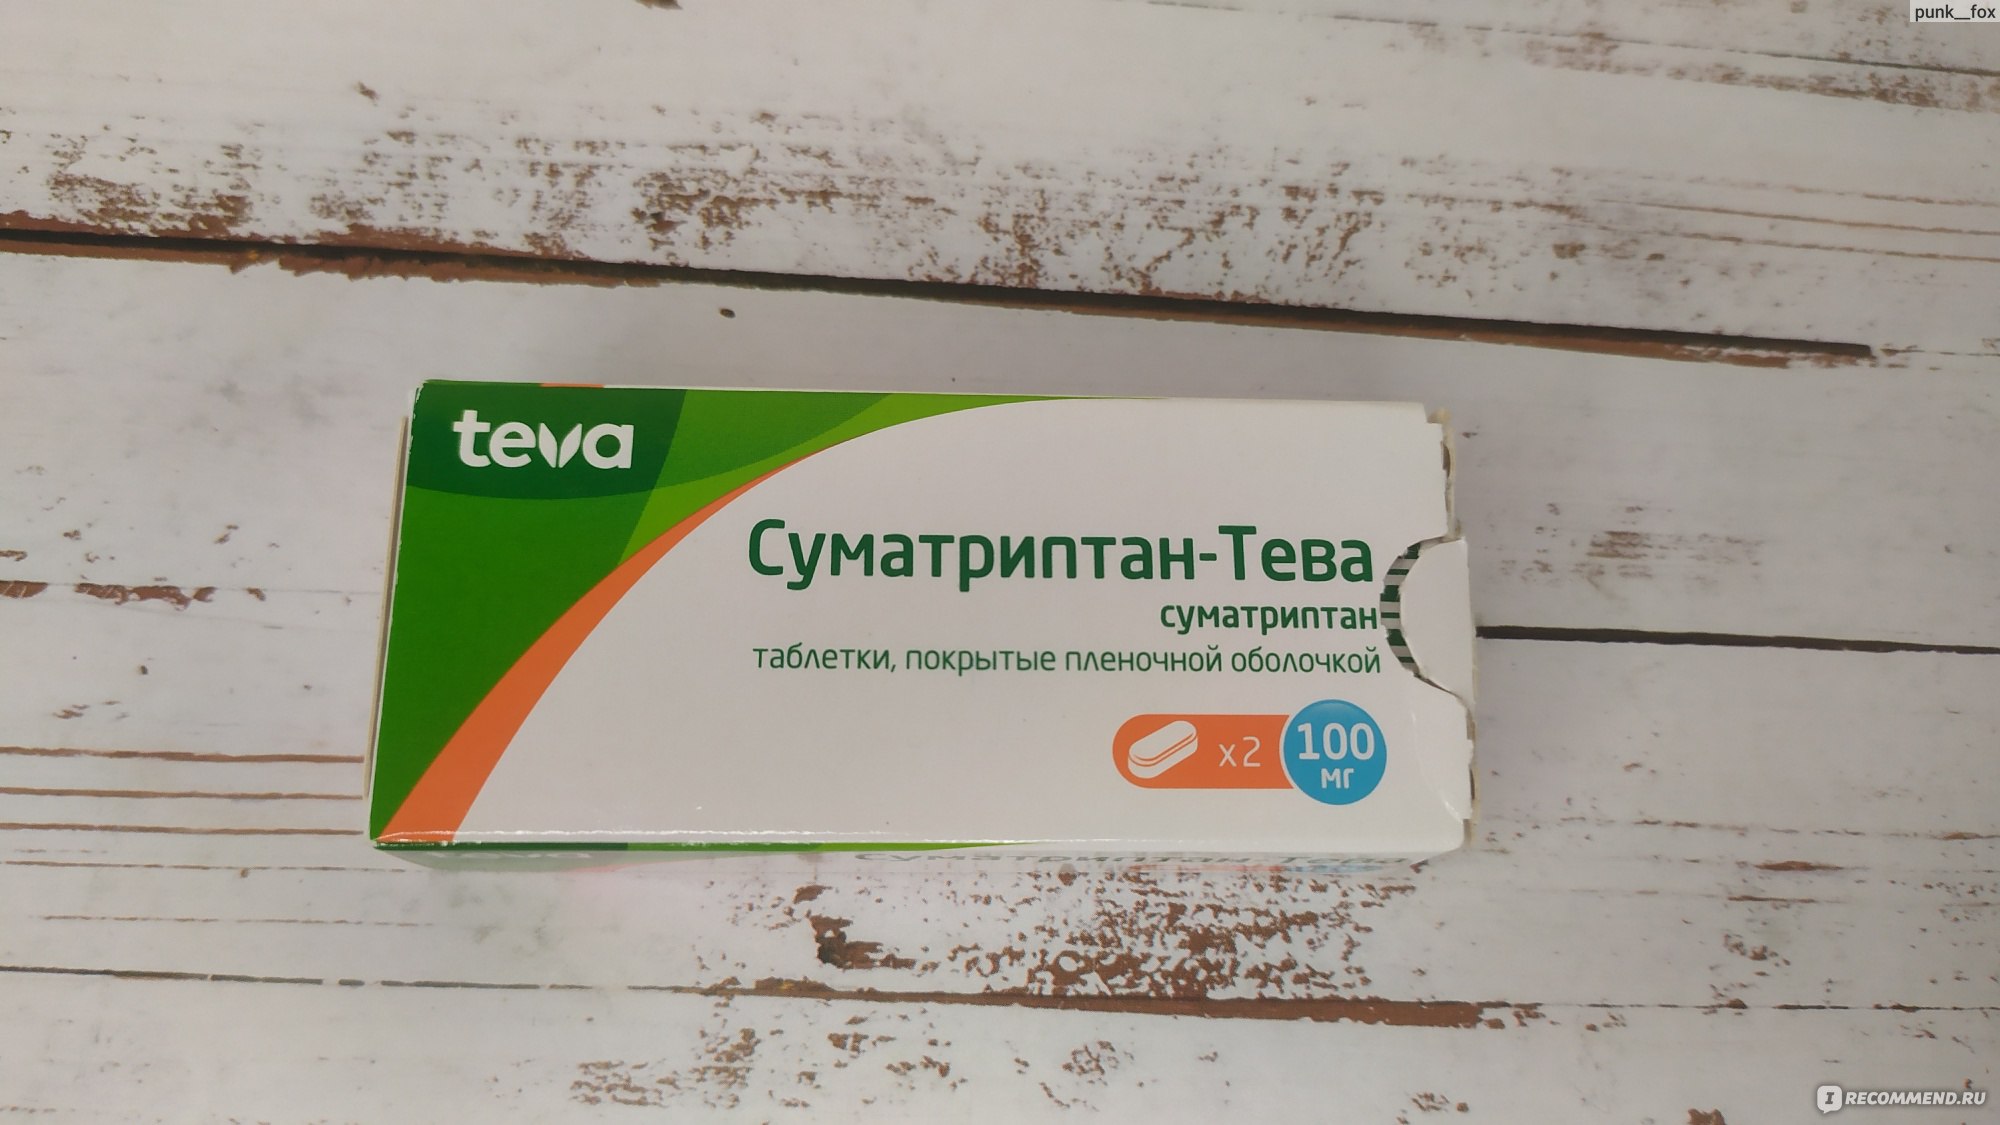 Противомигренозное средство TeVa Суматриптан-Тева 100 мг - «Ох уж этот .